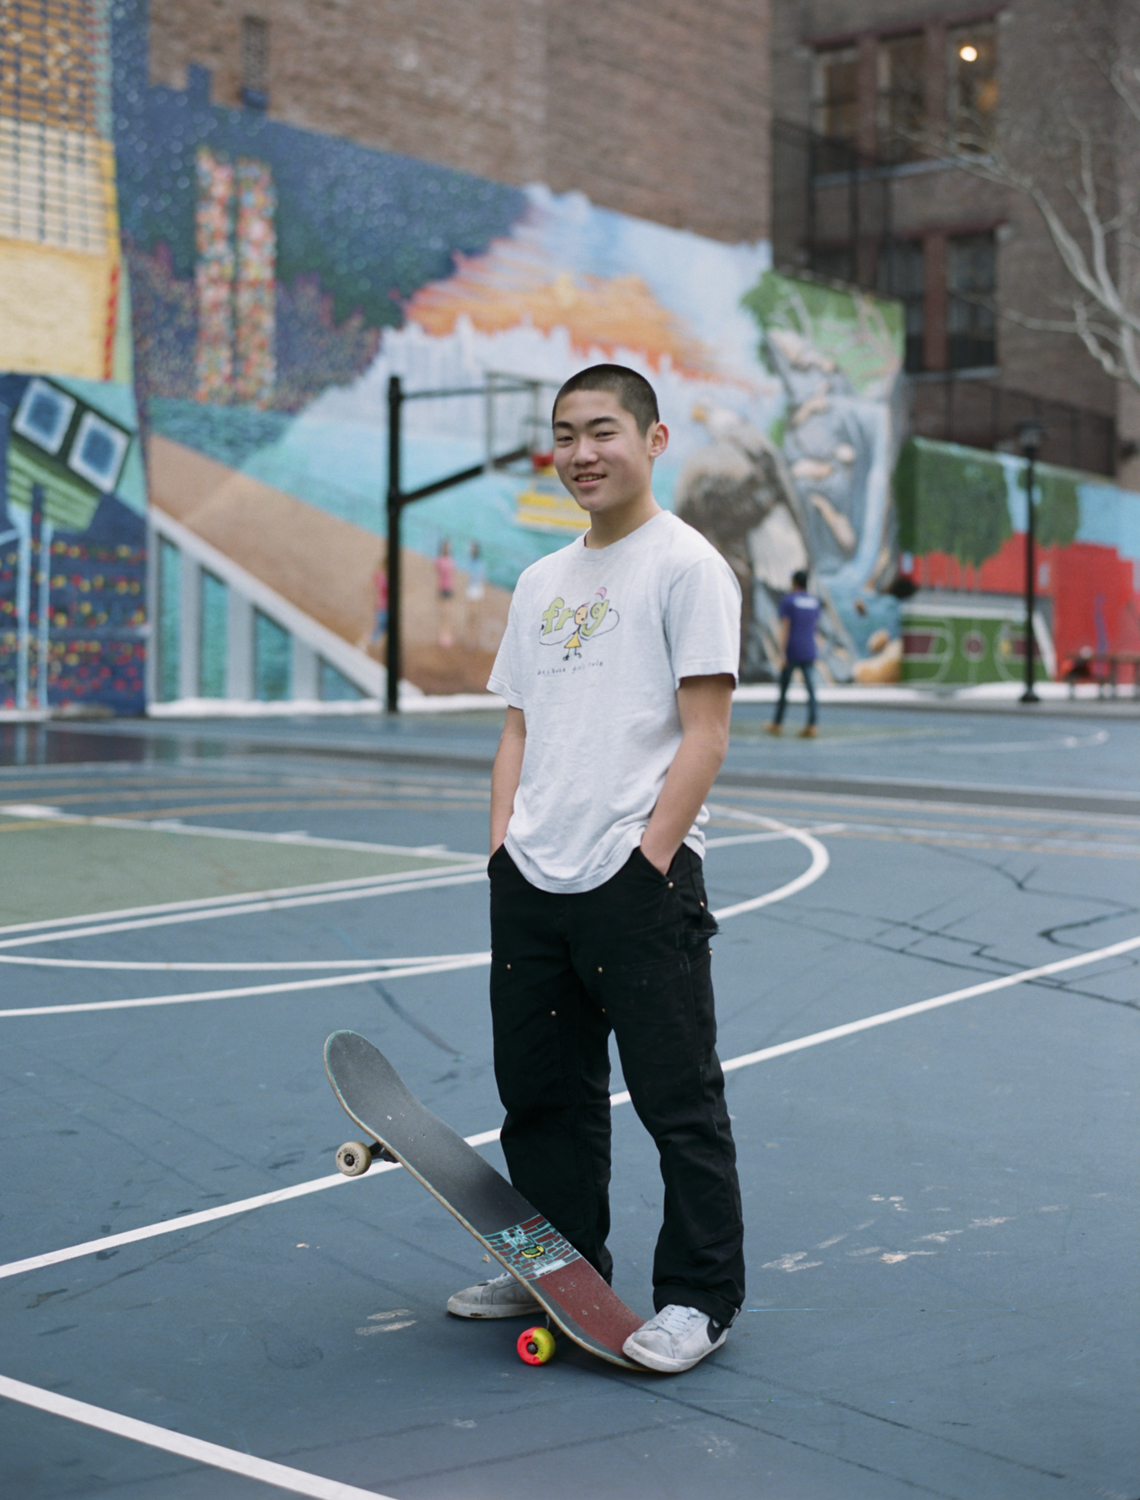 スケートボードが創造の原点- 特集 NY-05 “Frog Skateboards” | EYESCREAM